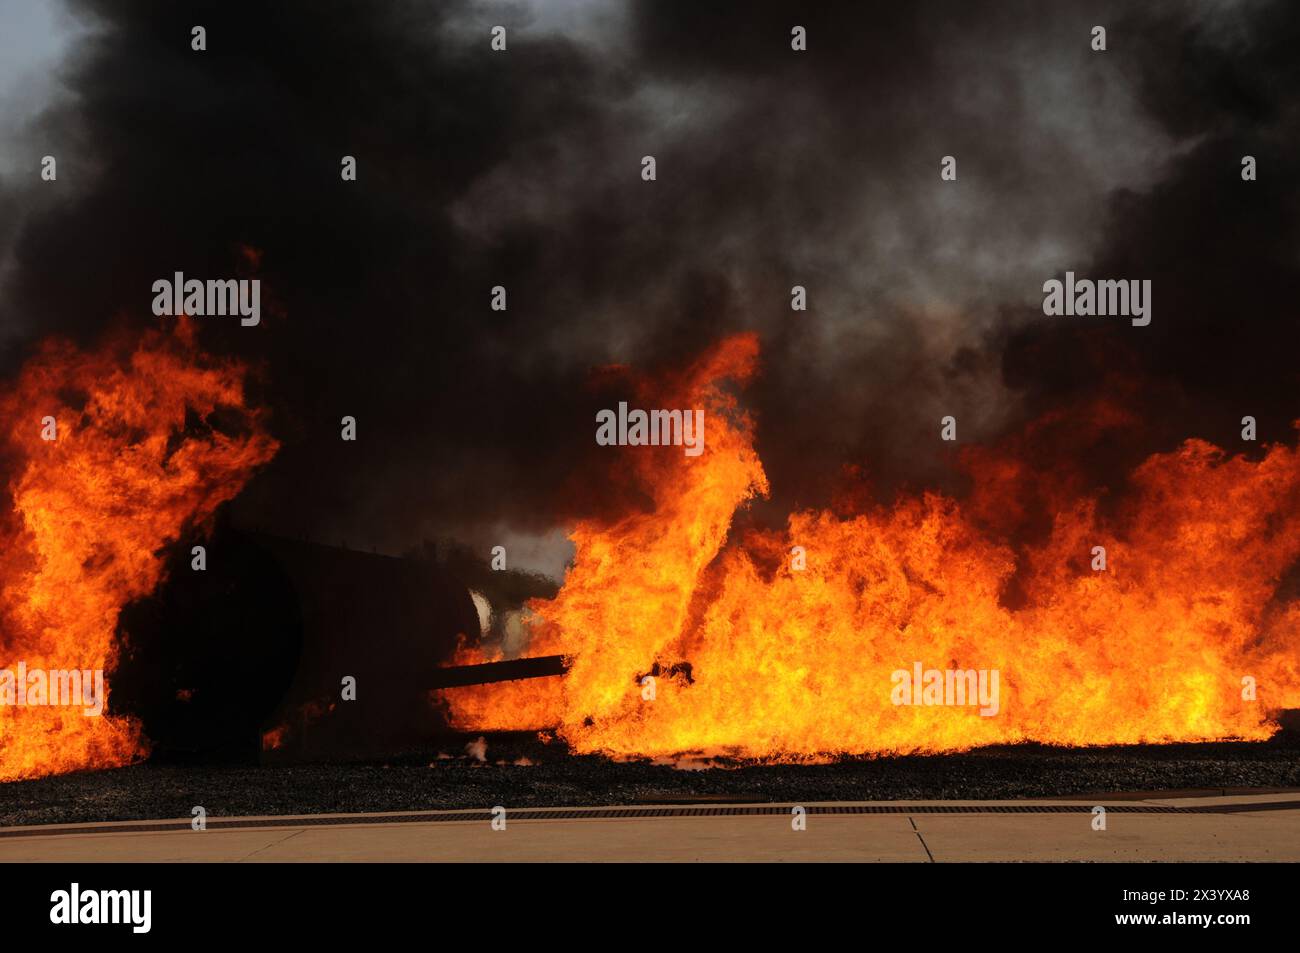 Plane Crash Simulator Burning, Texas Stock Photo